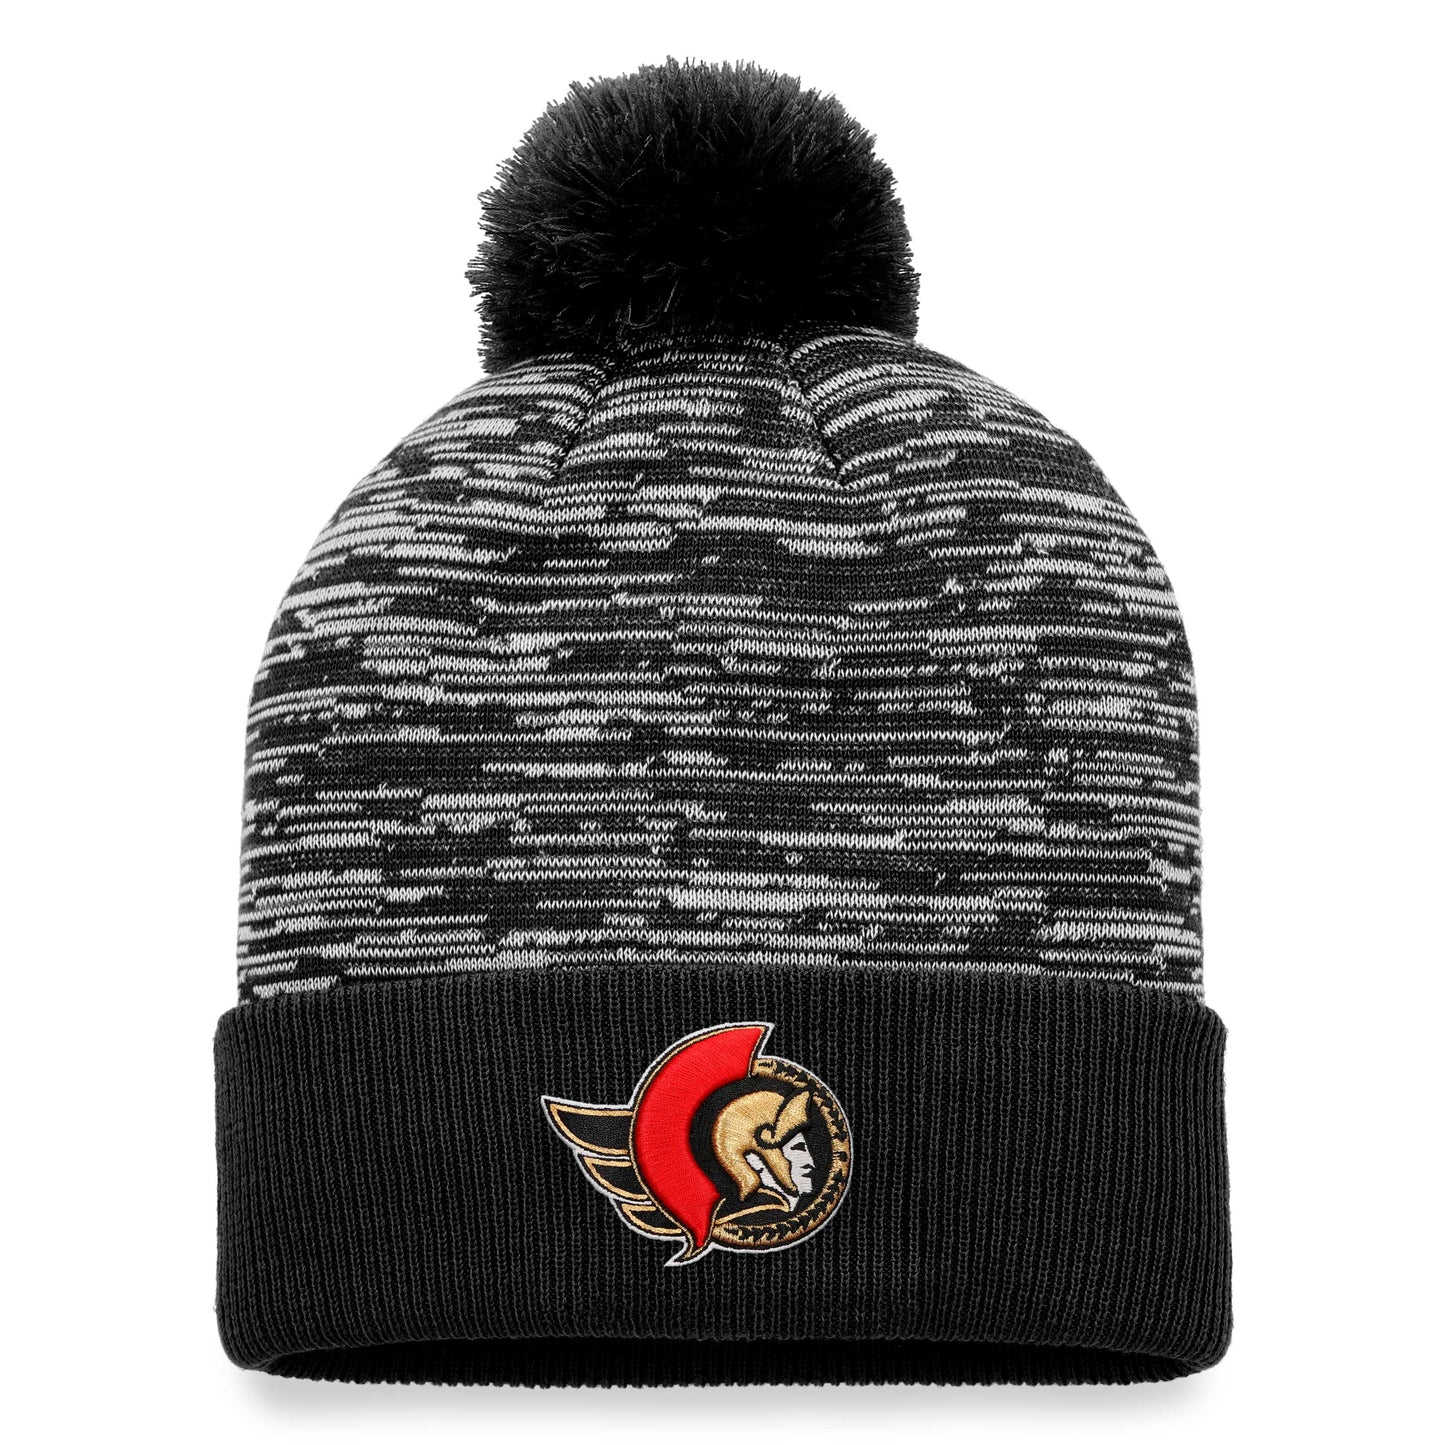 Men's Fanatics Branded Black Ottawa Senators Defender Cuffed Knit Hat with Pom - OSFA